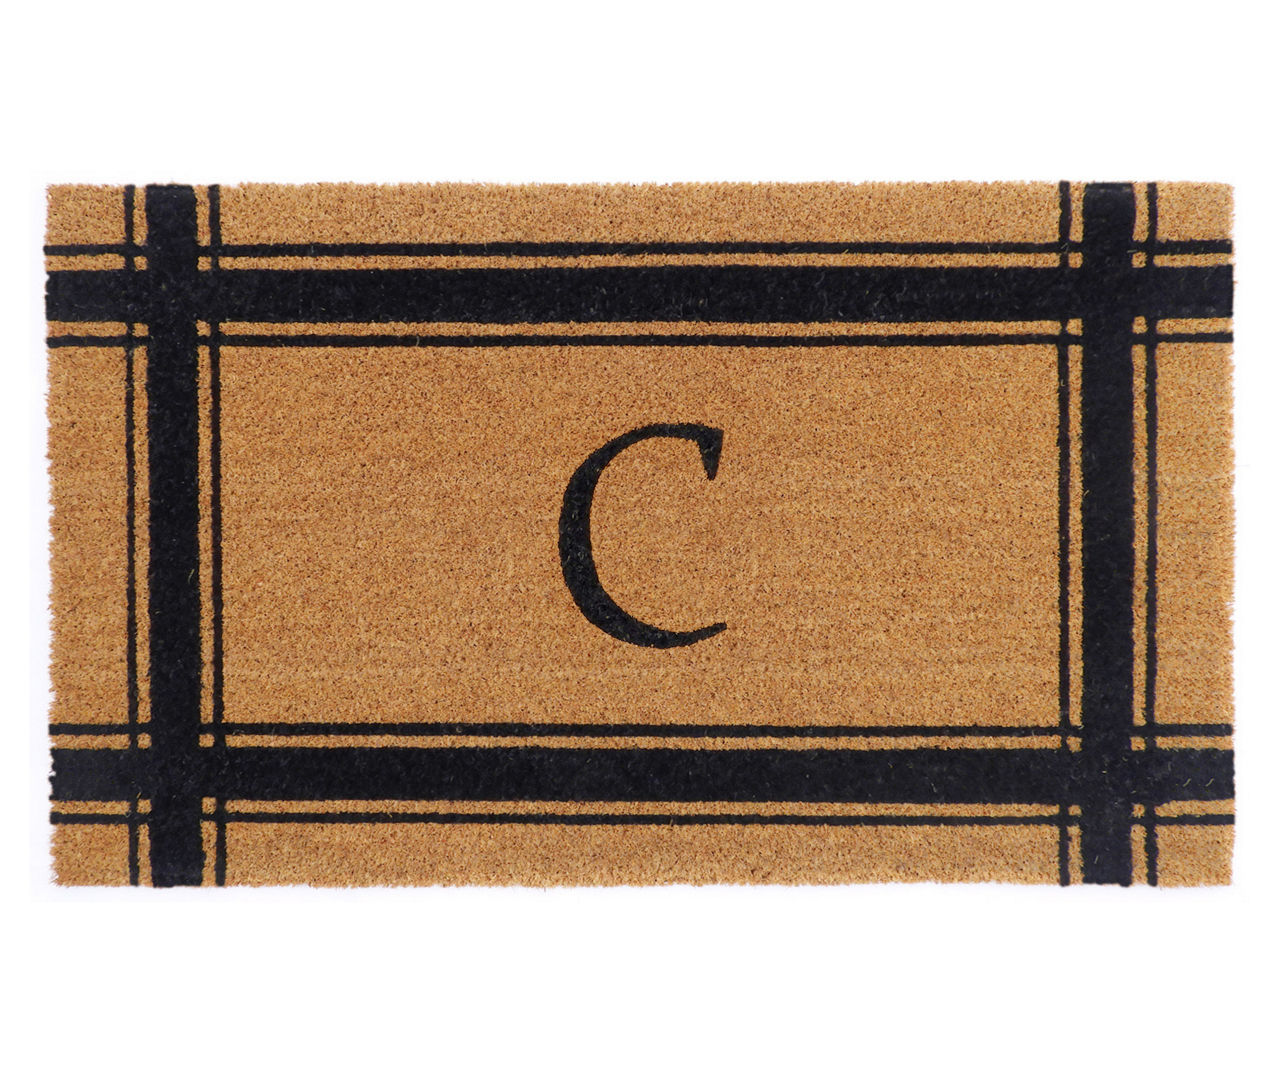 "C" Brown & Black Stripe-Border Monogram Outdoor Doormat, (29" x 17")